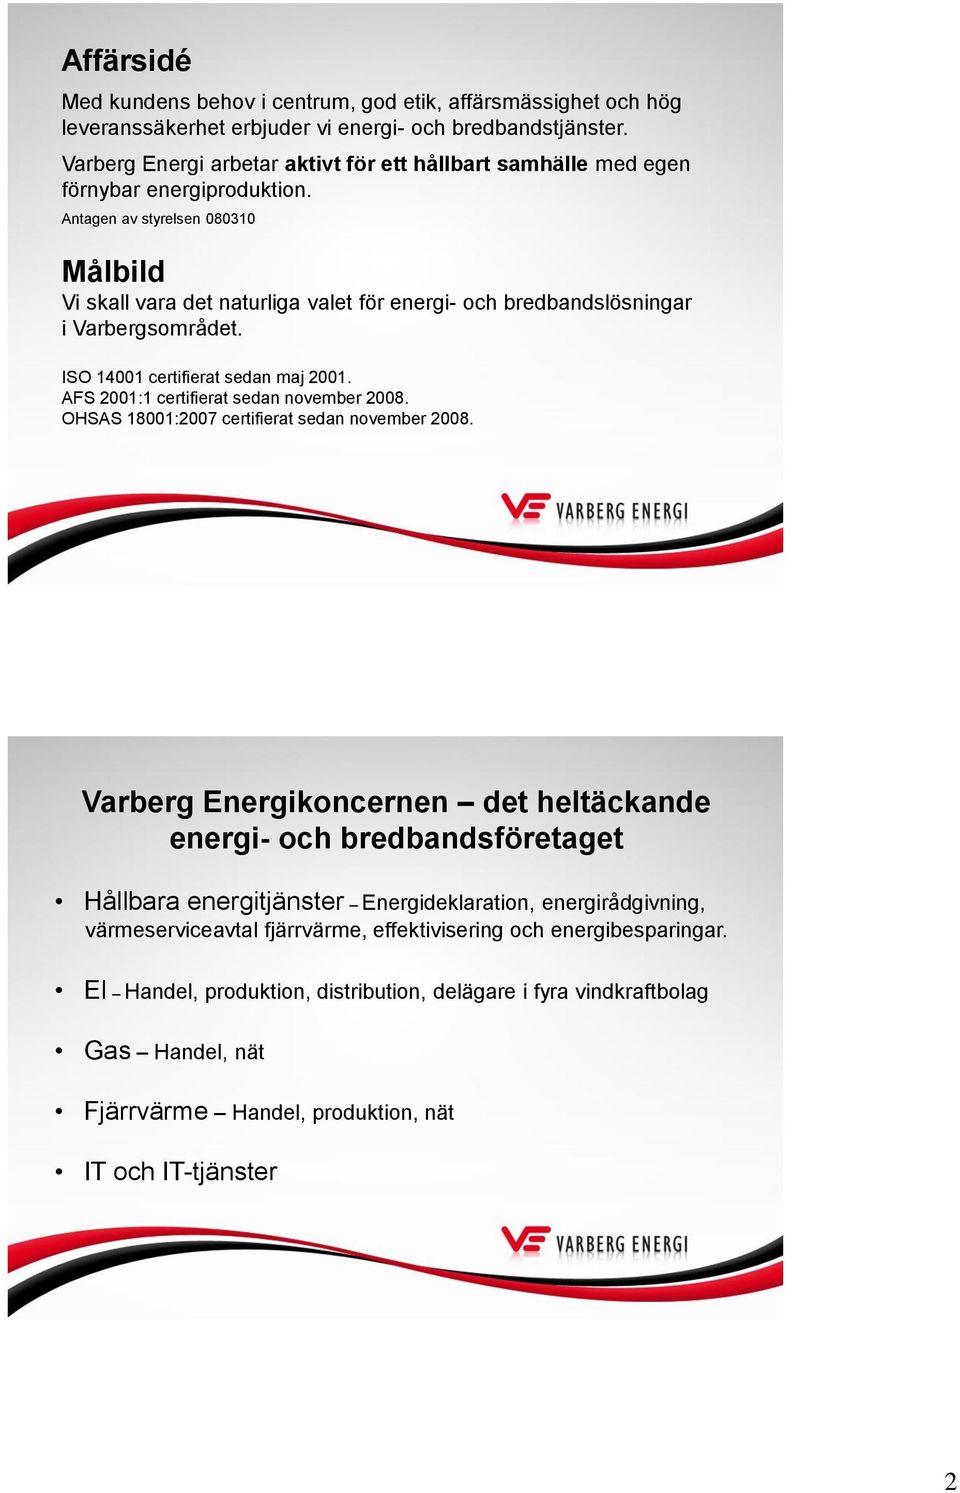 Antagen av styrelsen 831 Målbild Vi skall vara det naturliga valet för energi- och bredbandslösningar i Varbergsområdet. ISO 141 certifierat sedan maj 21. AFS 21:1 certifierat sedan november 28.